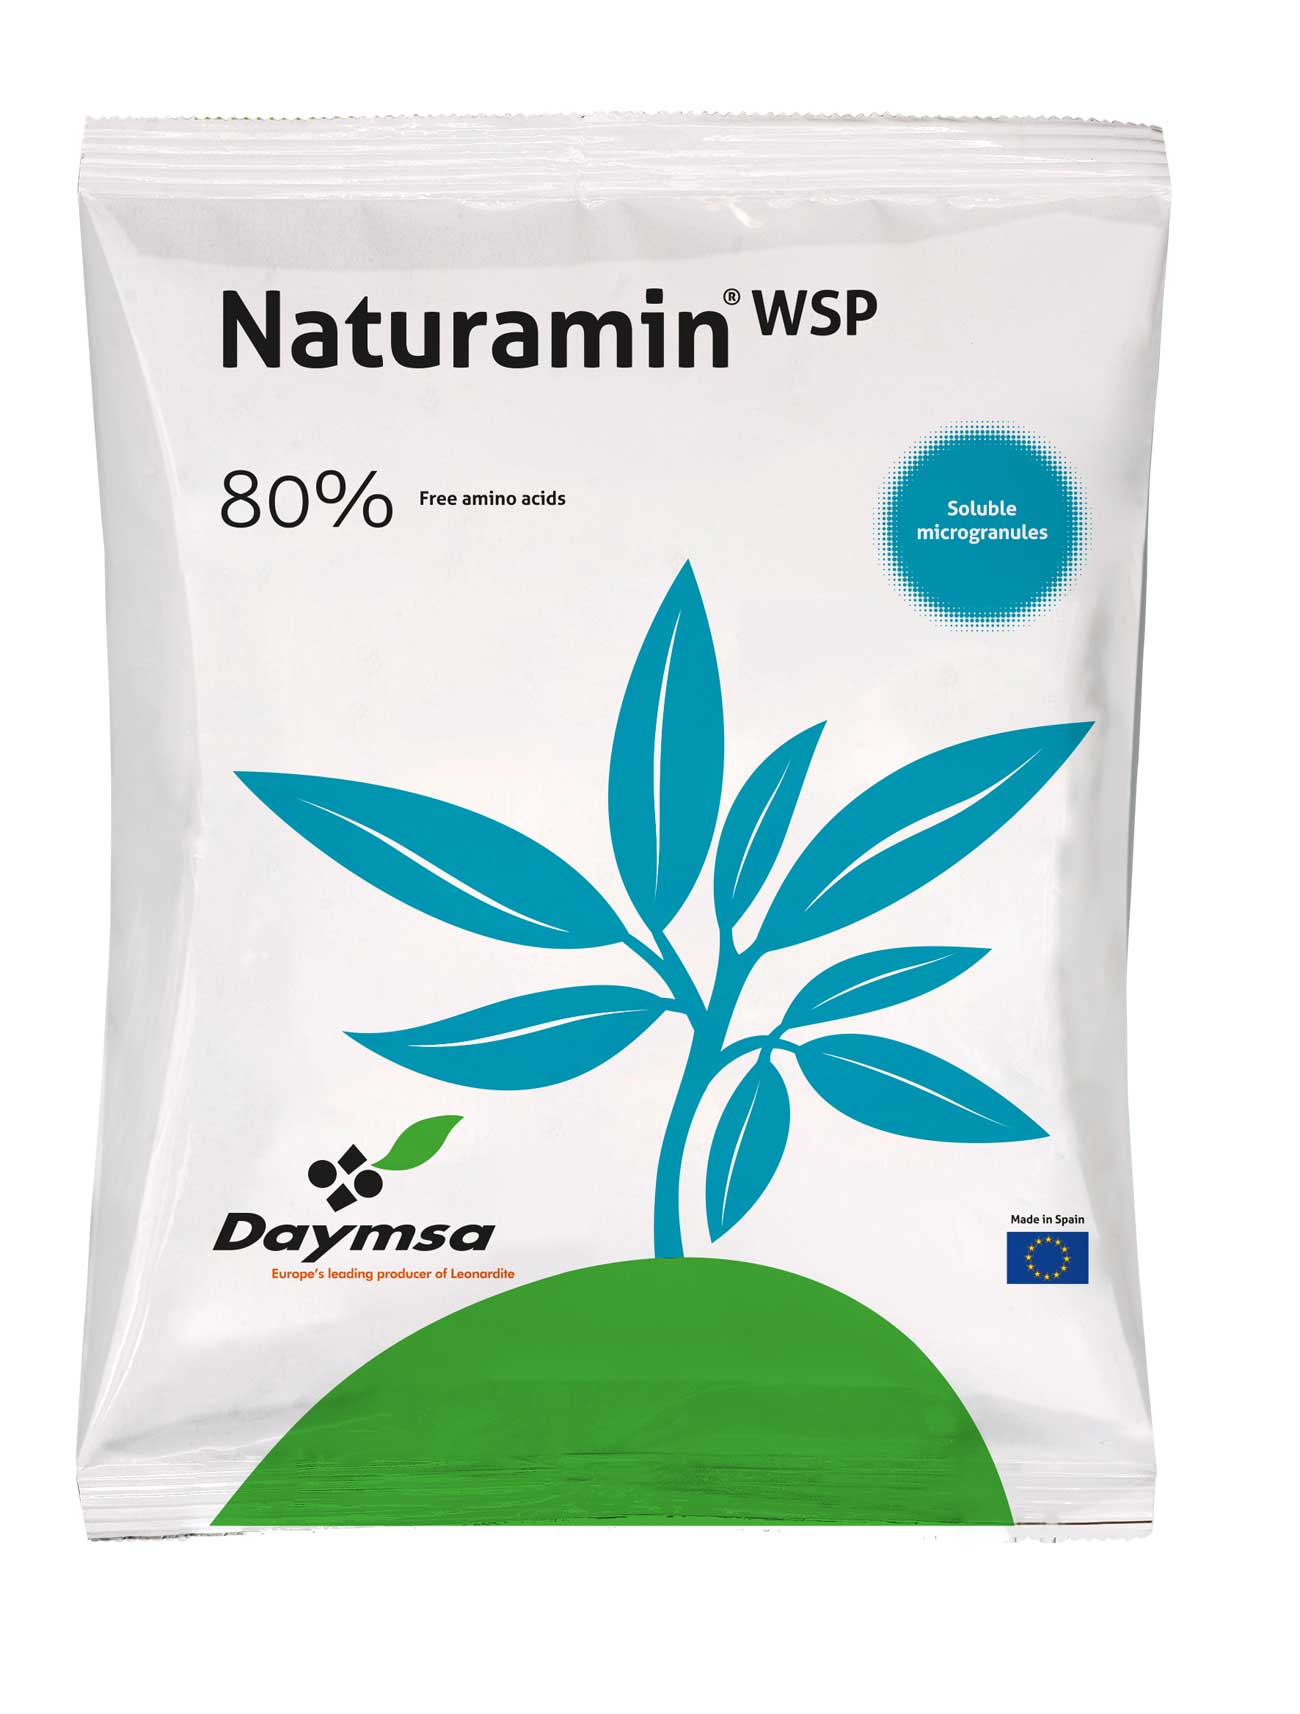 Naturamin - WSP, 80% de aminoácidos libres para una mayor productividad del  cultivo - Horticultura